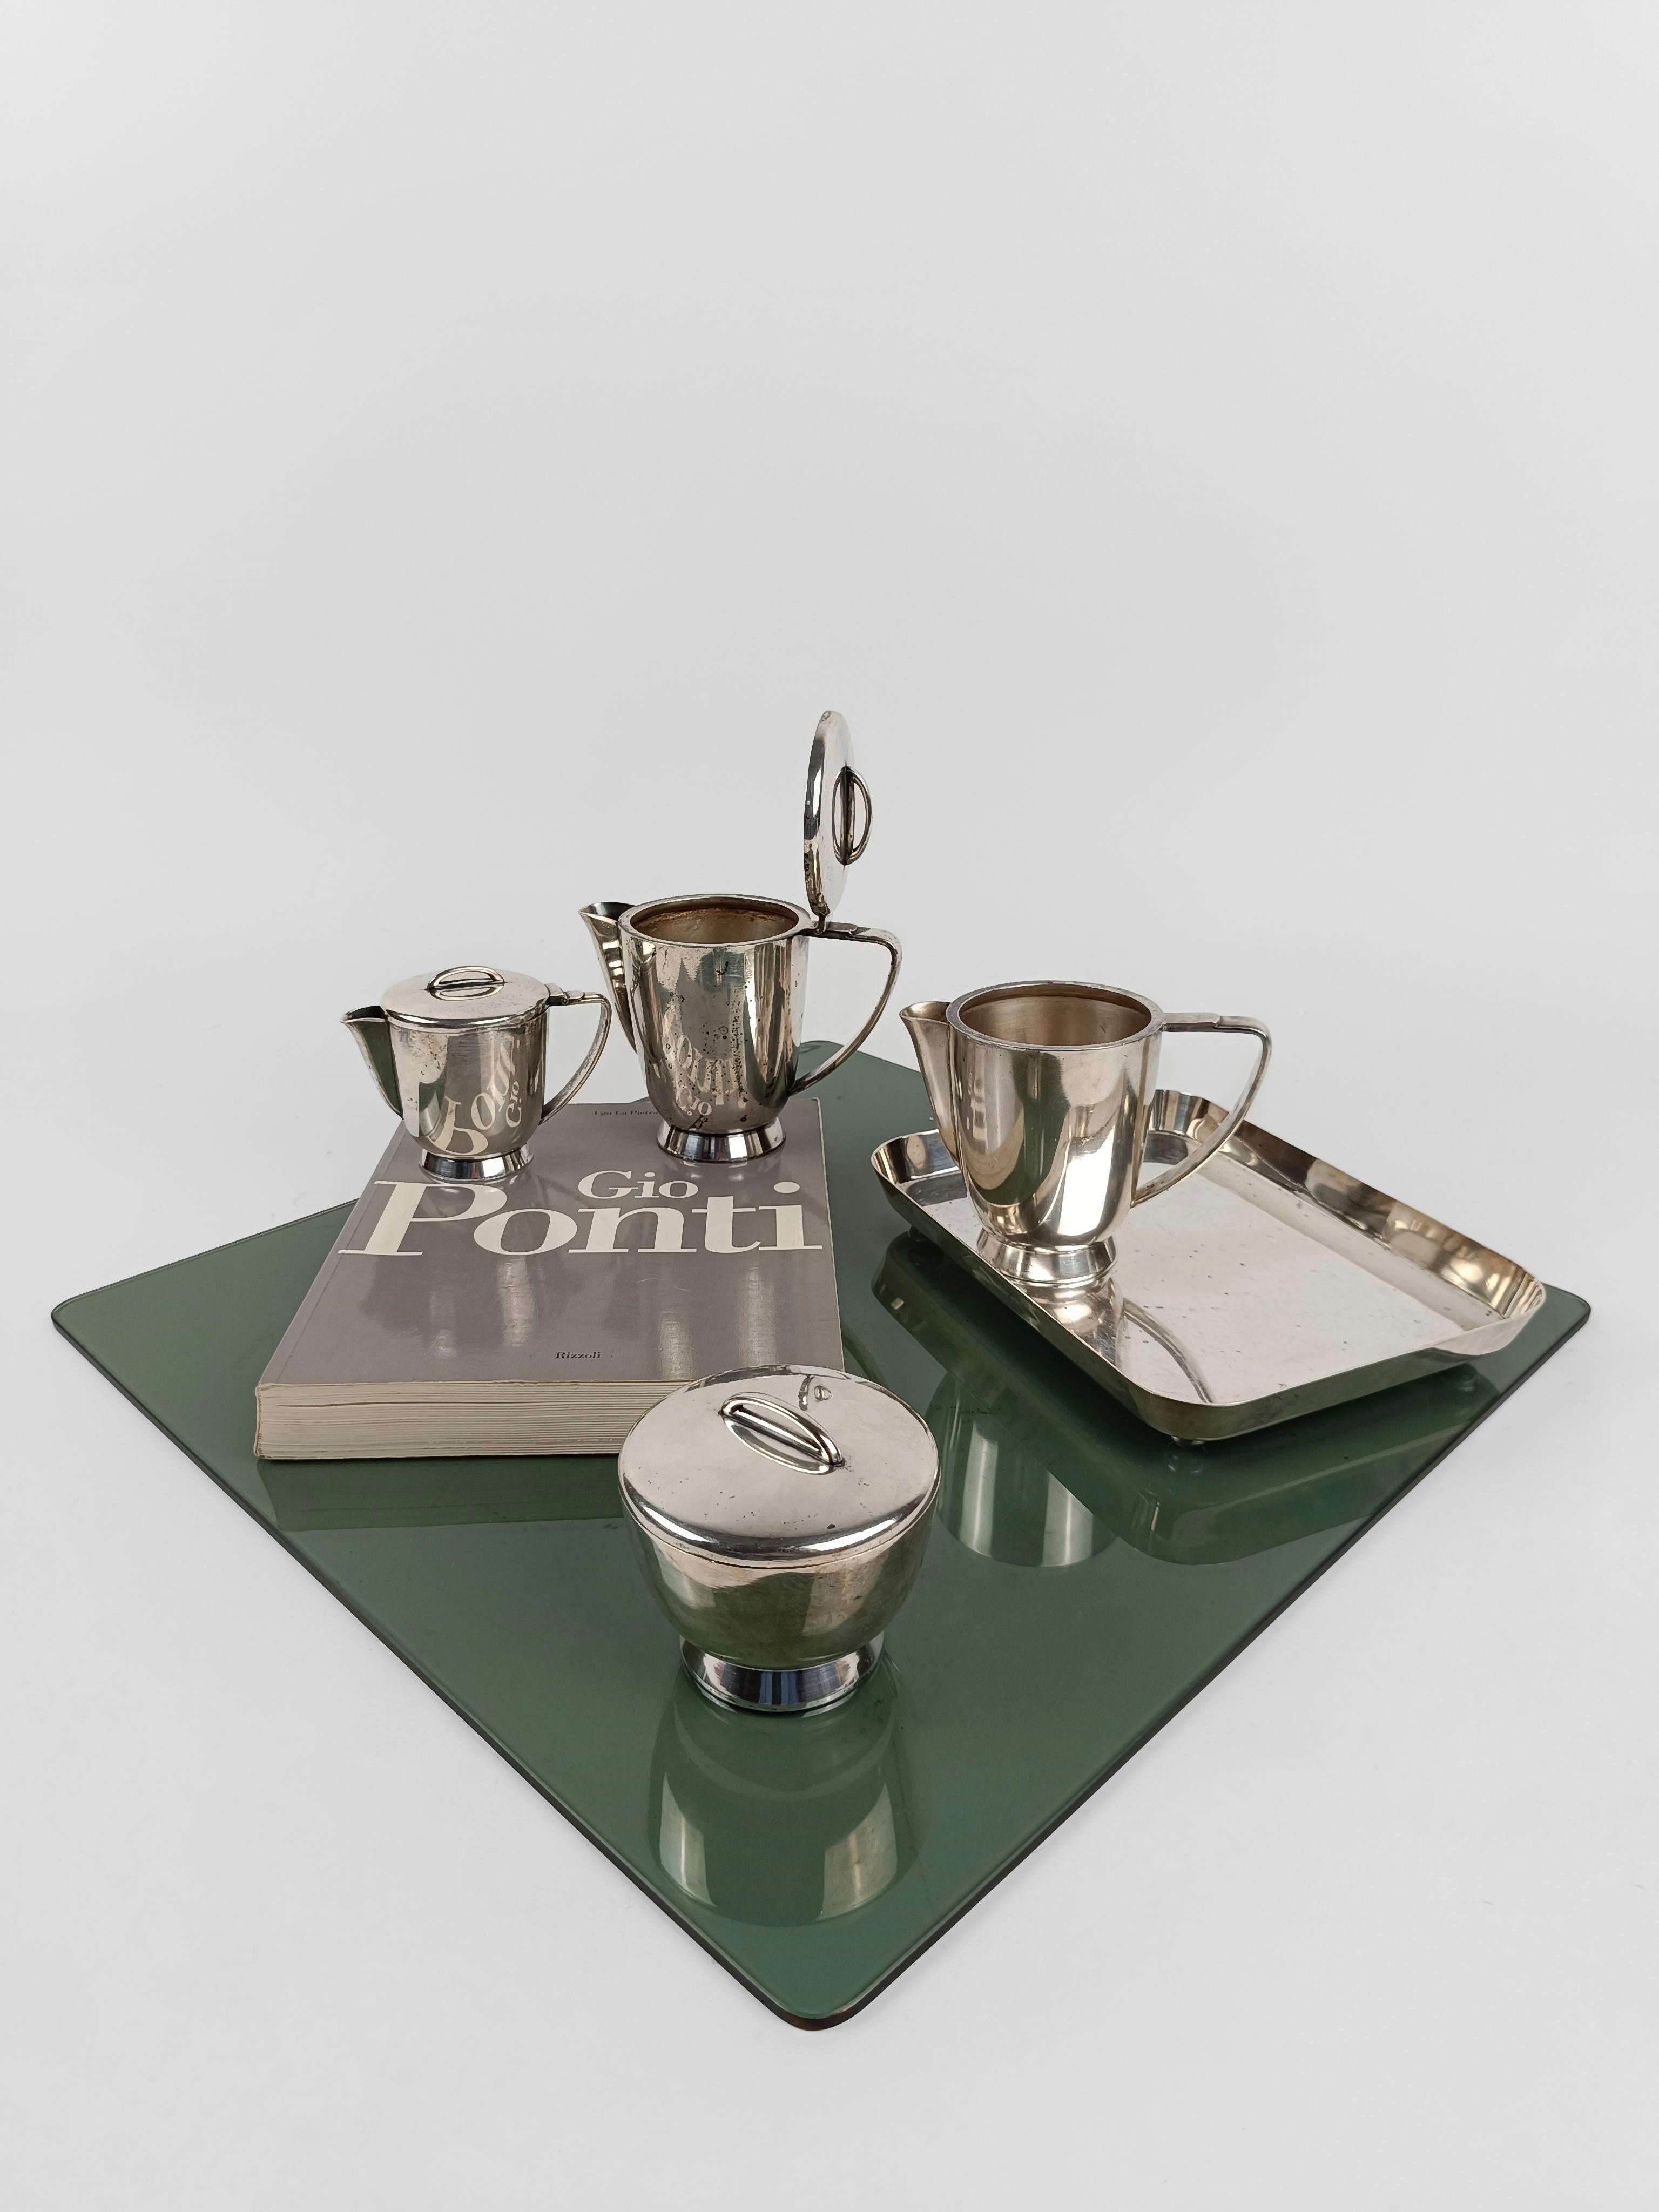 Gio Ponti Tea / coffee set from the Parco dei Principi hotel in Rome 1960s circa For Sale 11